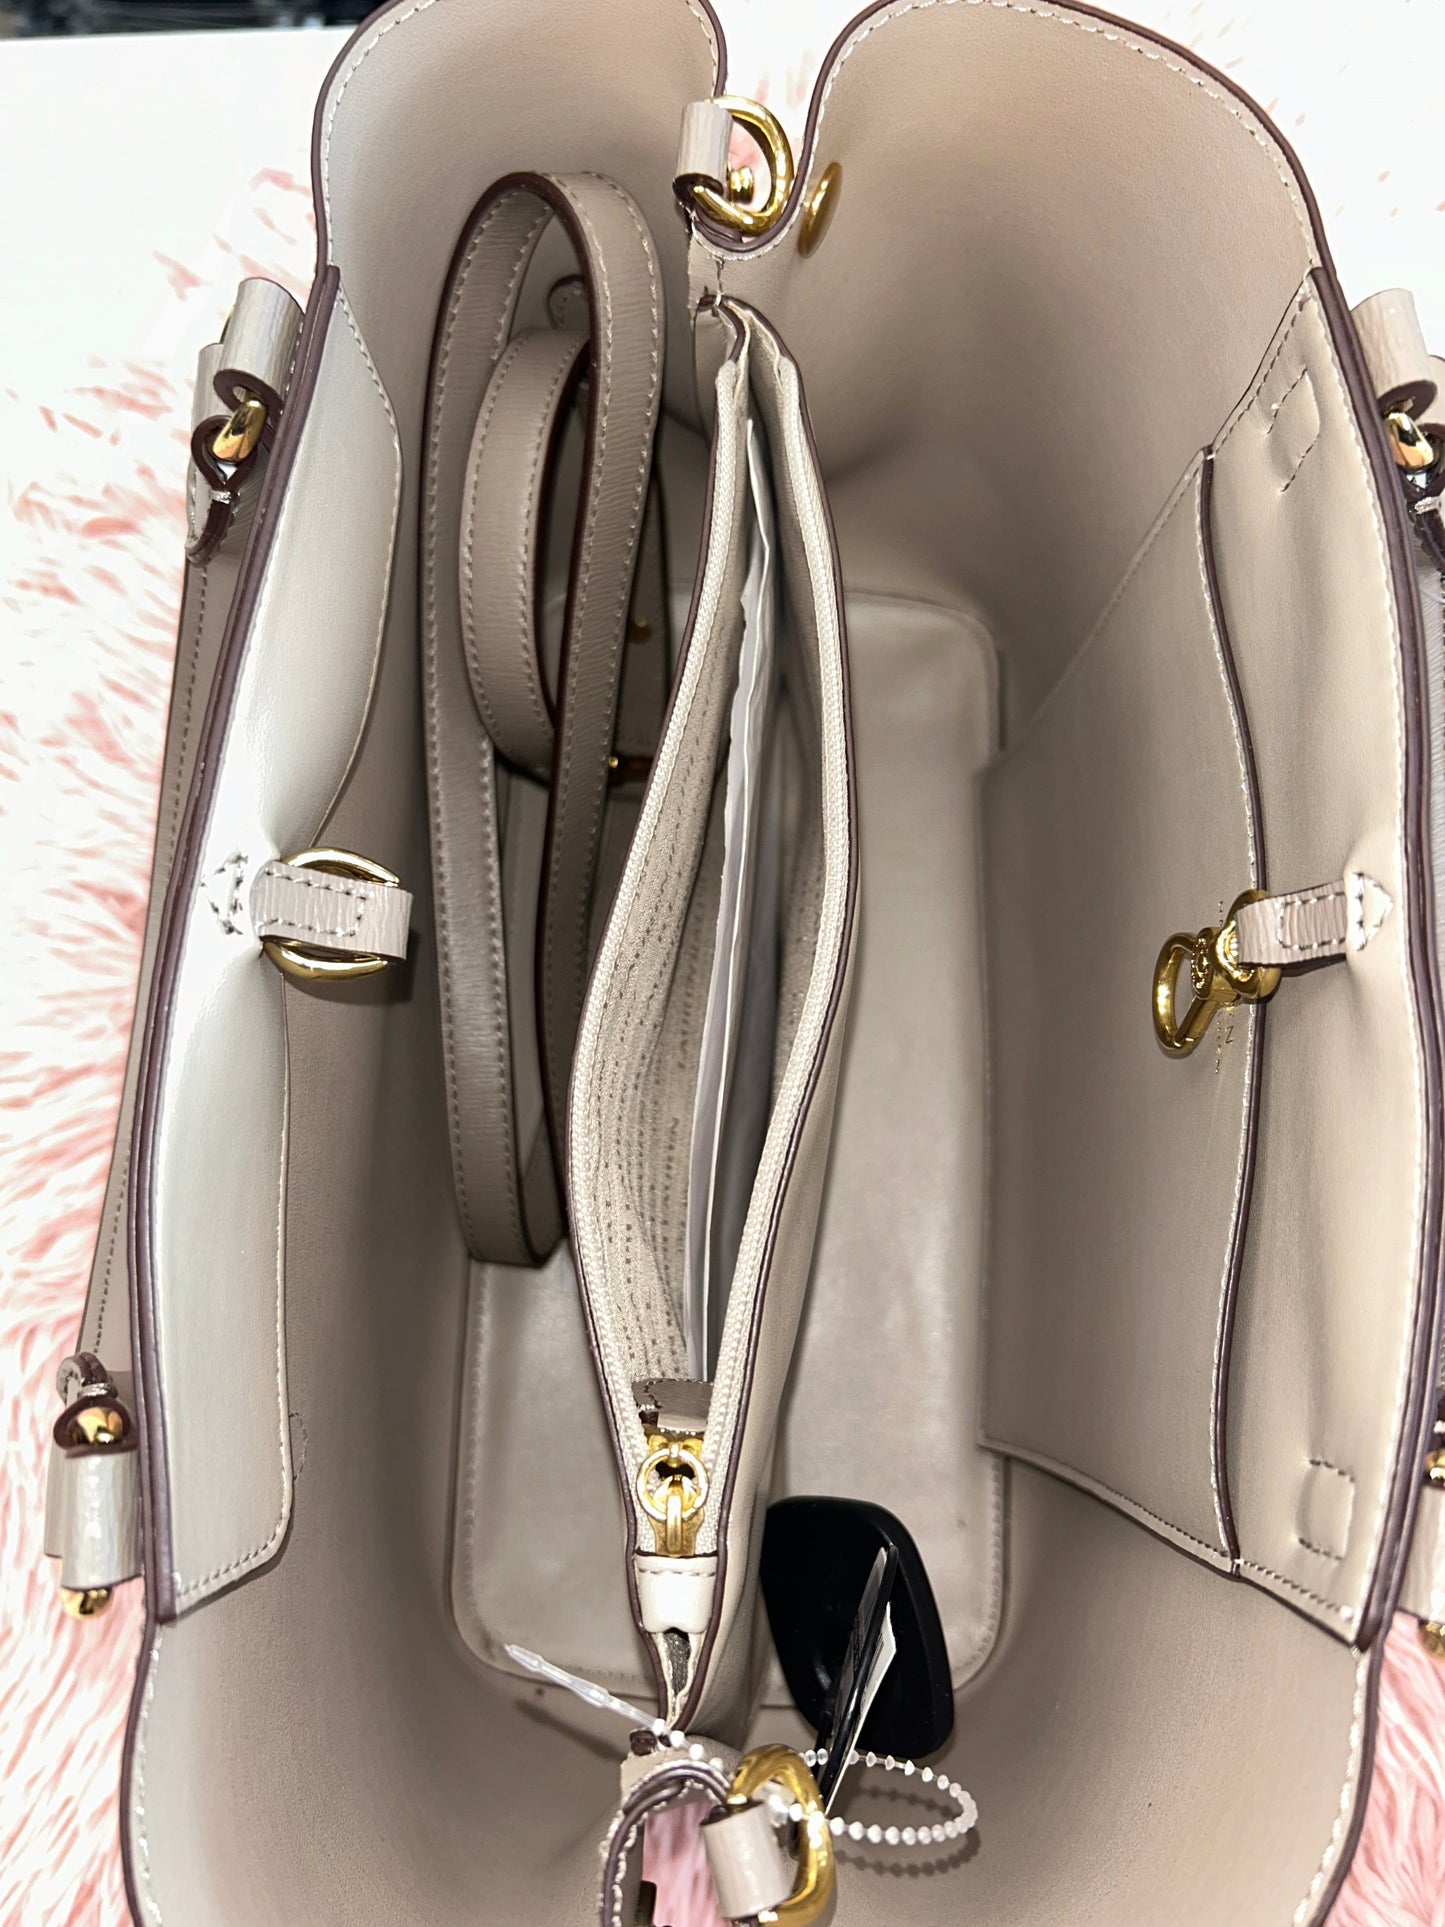 Handbag Lauren By Ralph Lauren, Size Medium